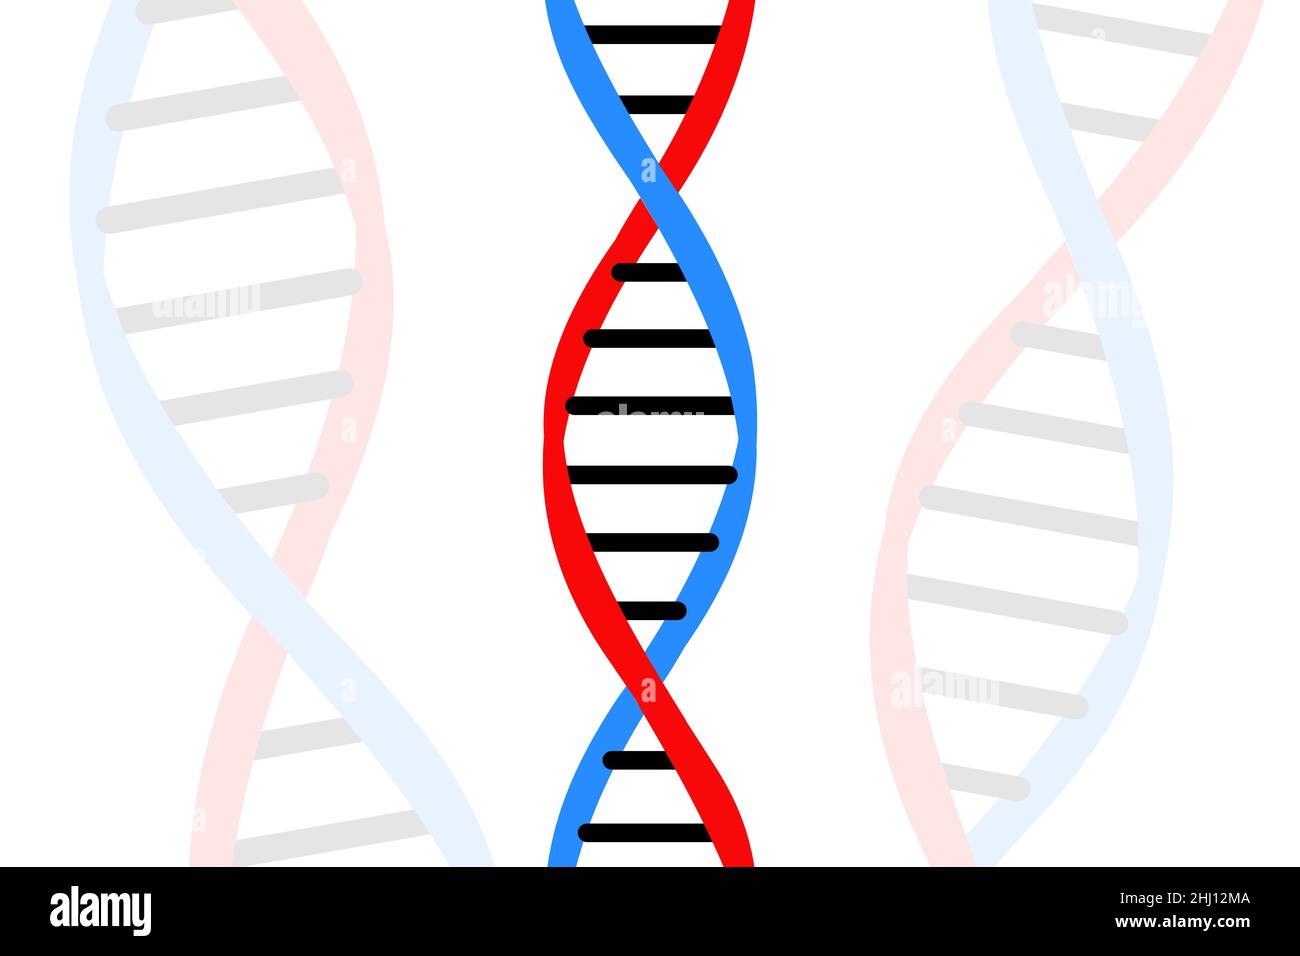 Structure de l'ADN isolée.Biologie ou biotechnologie résumé illustration fond.Section transversale de l'anatomie des cellules humaines Banque D'Images